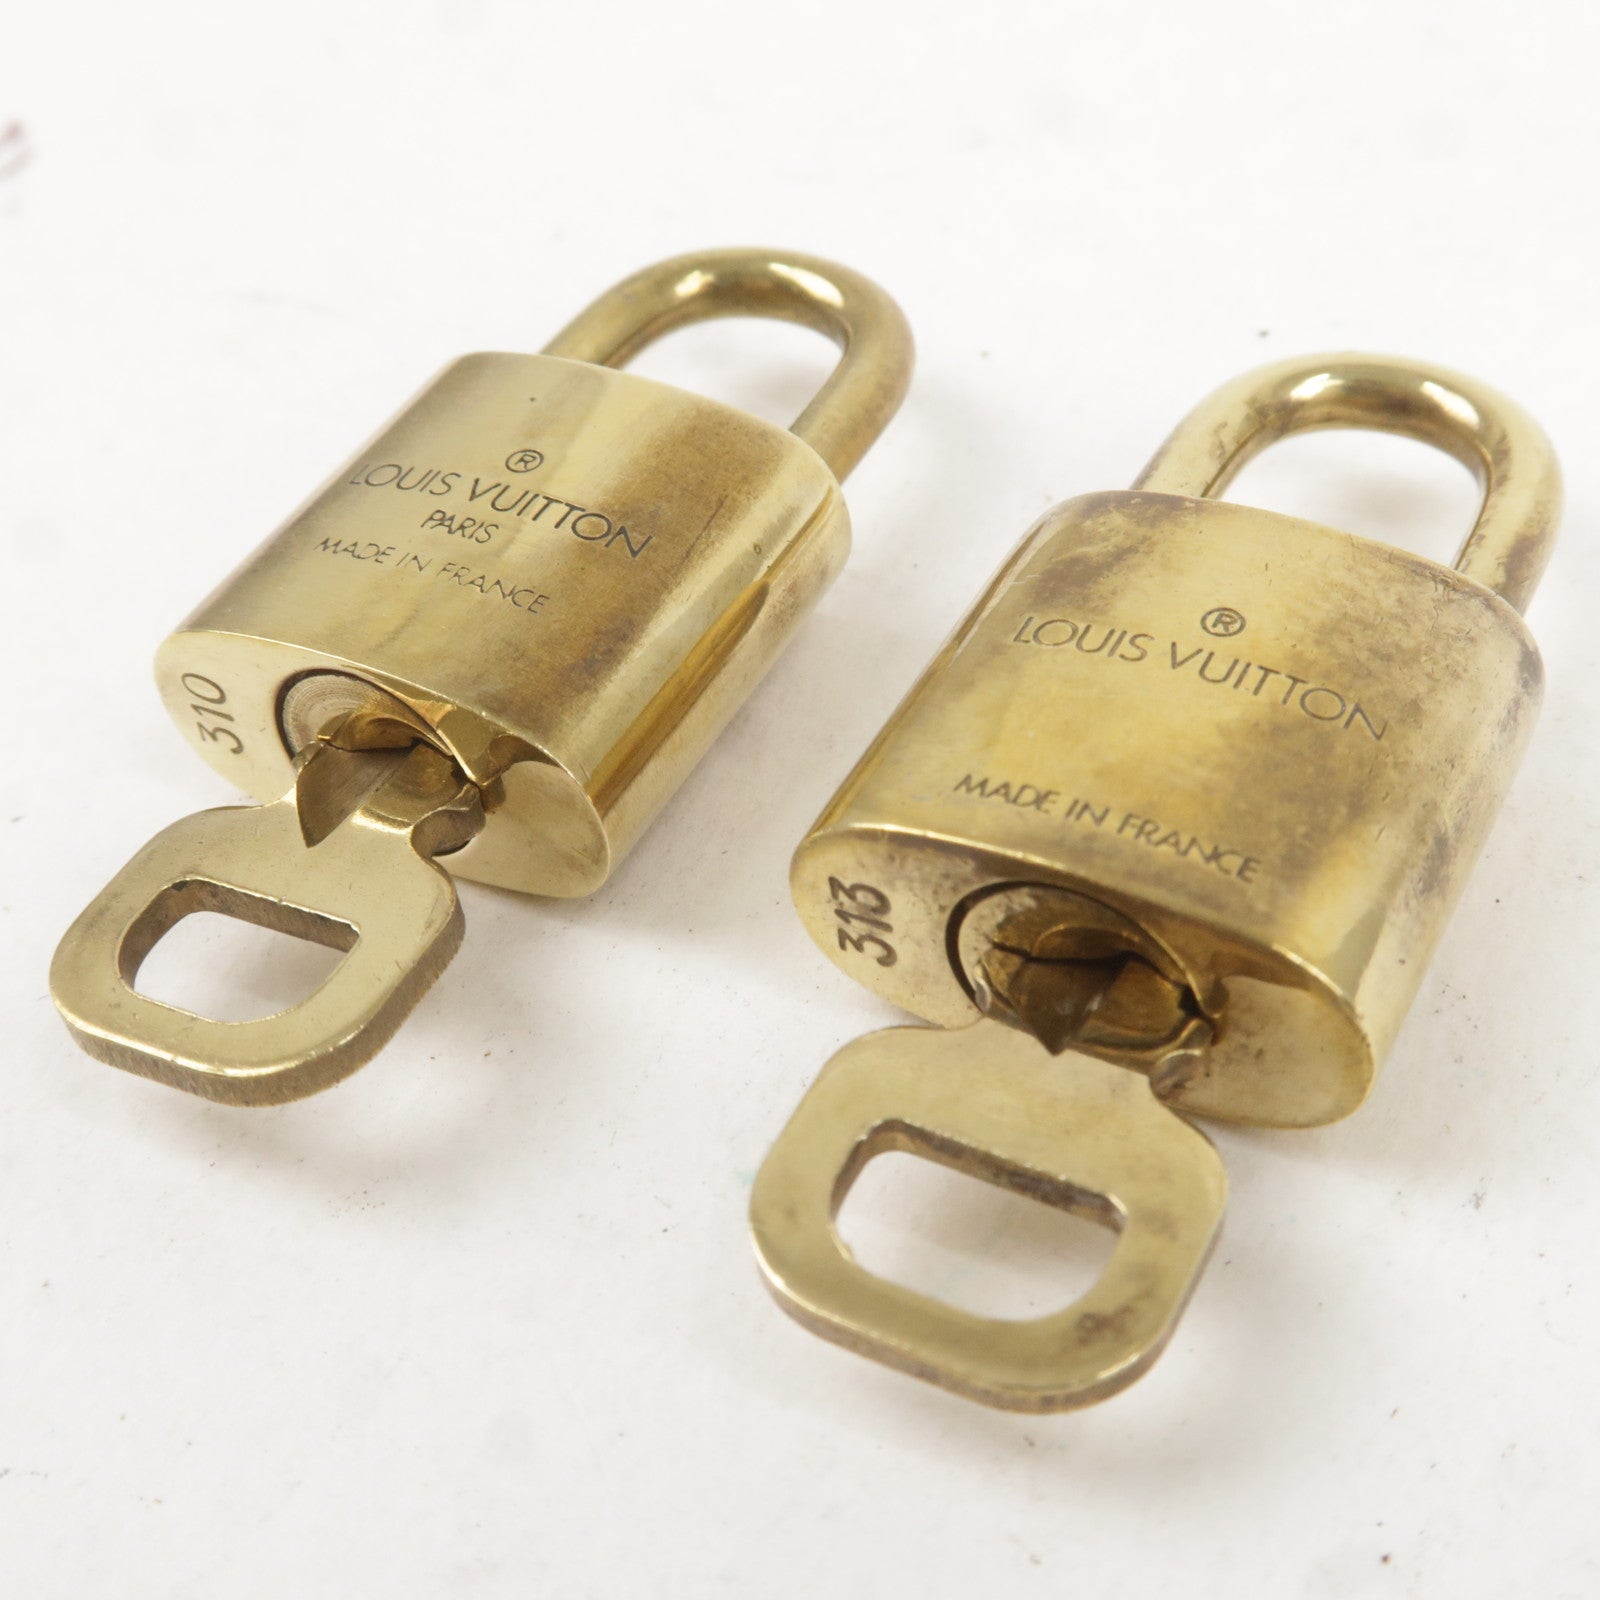 lv padlock made in france